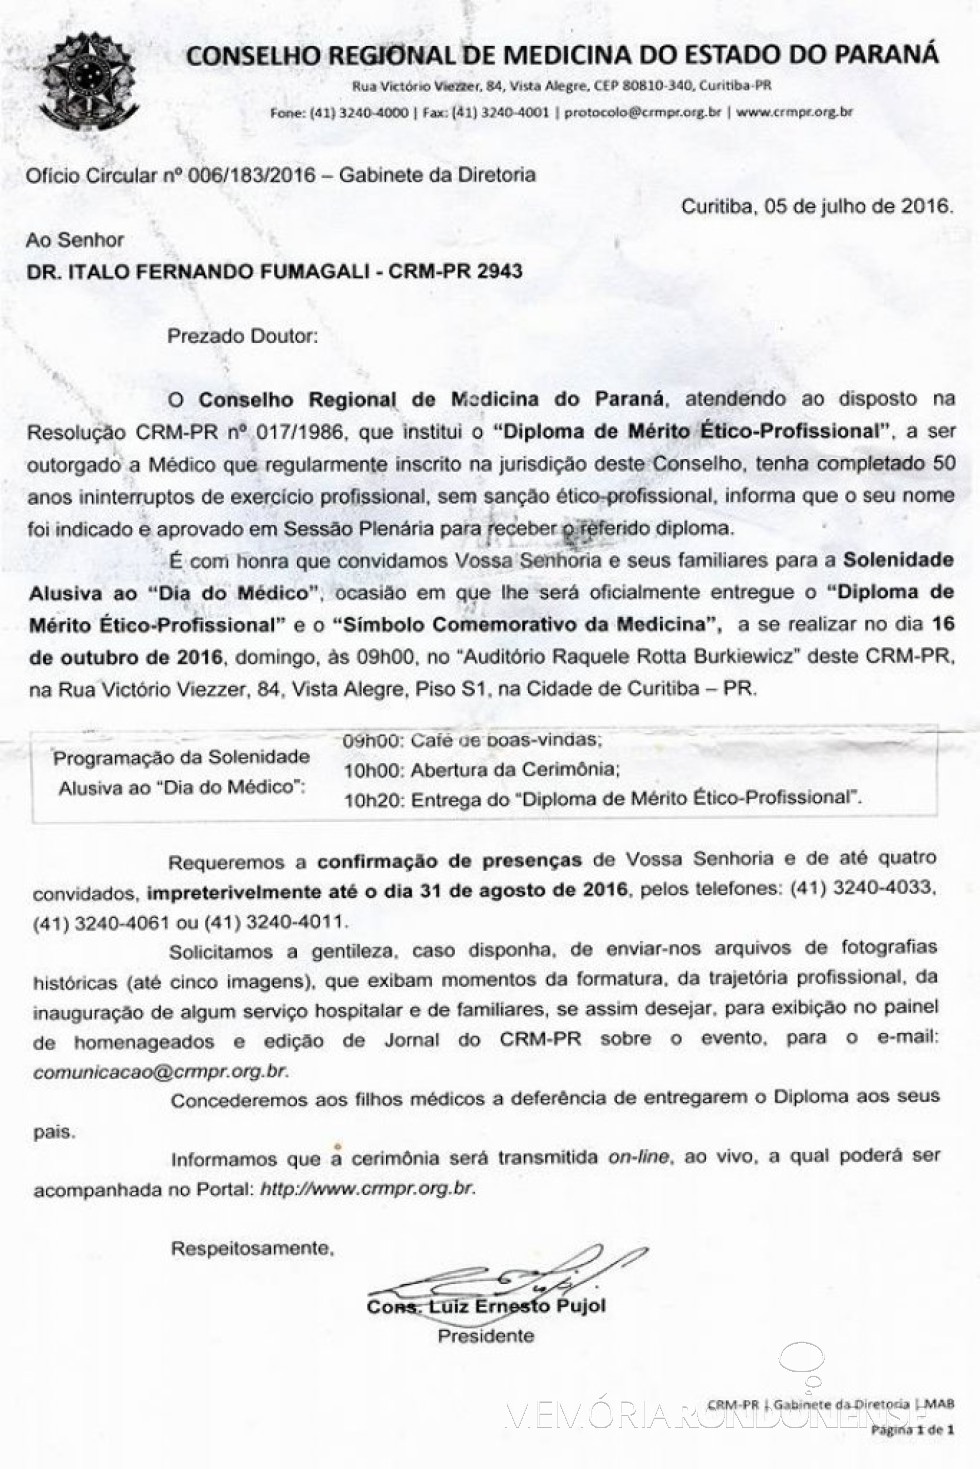 || Comunicação e convite do Conselho Regional de Medicina do Paraná ao Dr. Italo Fernando Fumagalli para receber o 